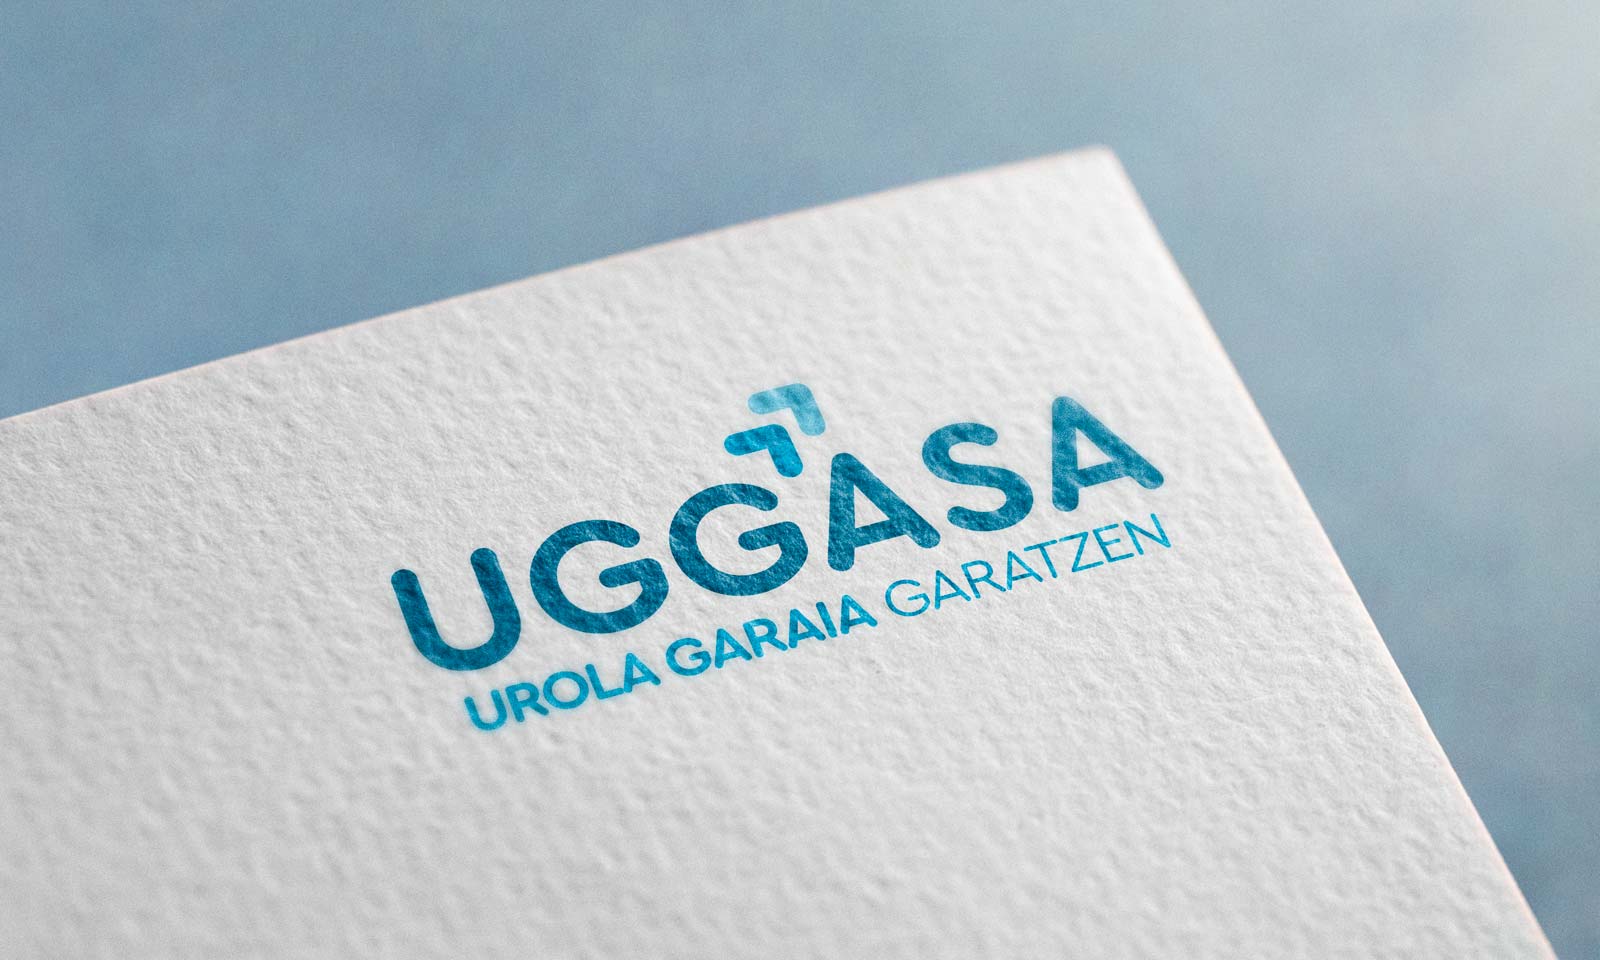 Logo Uggasa